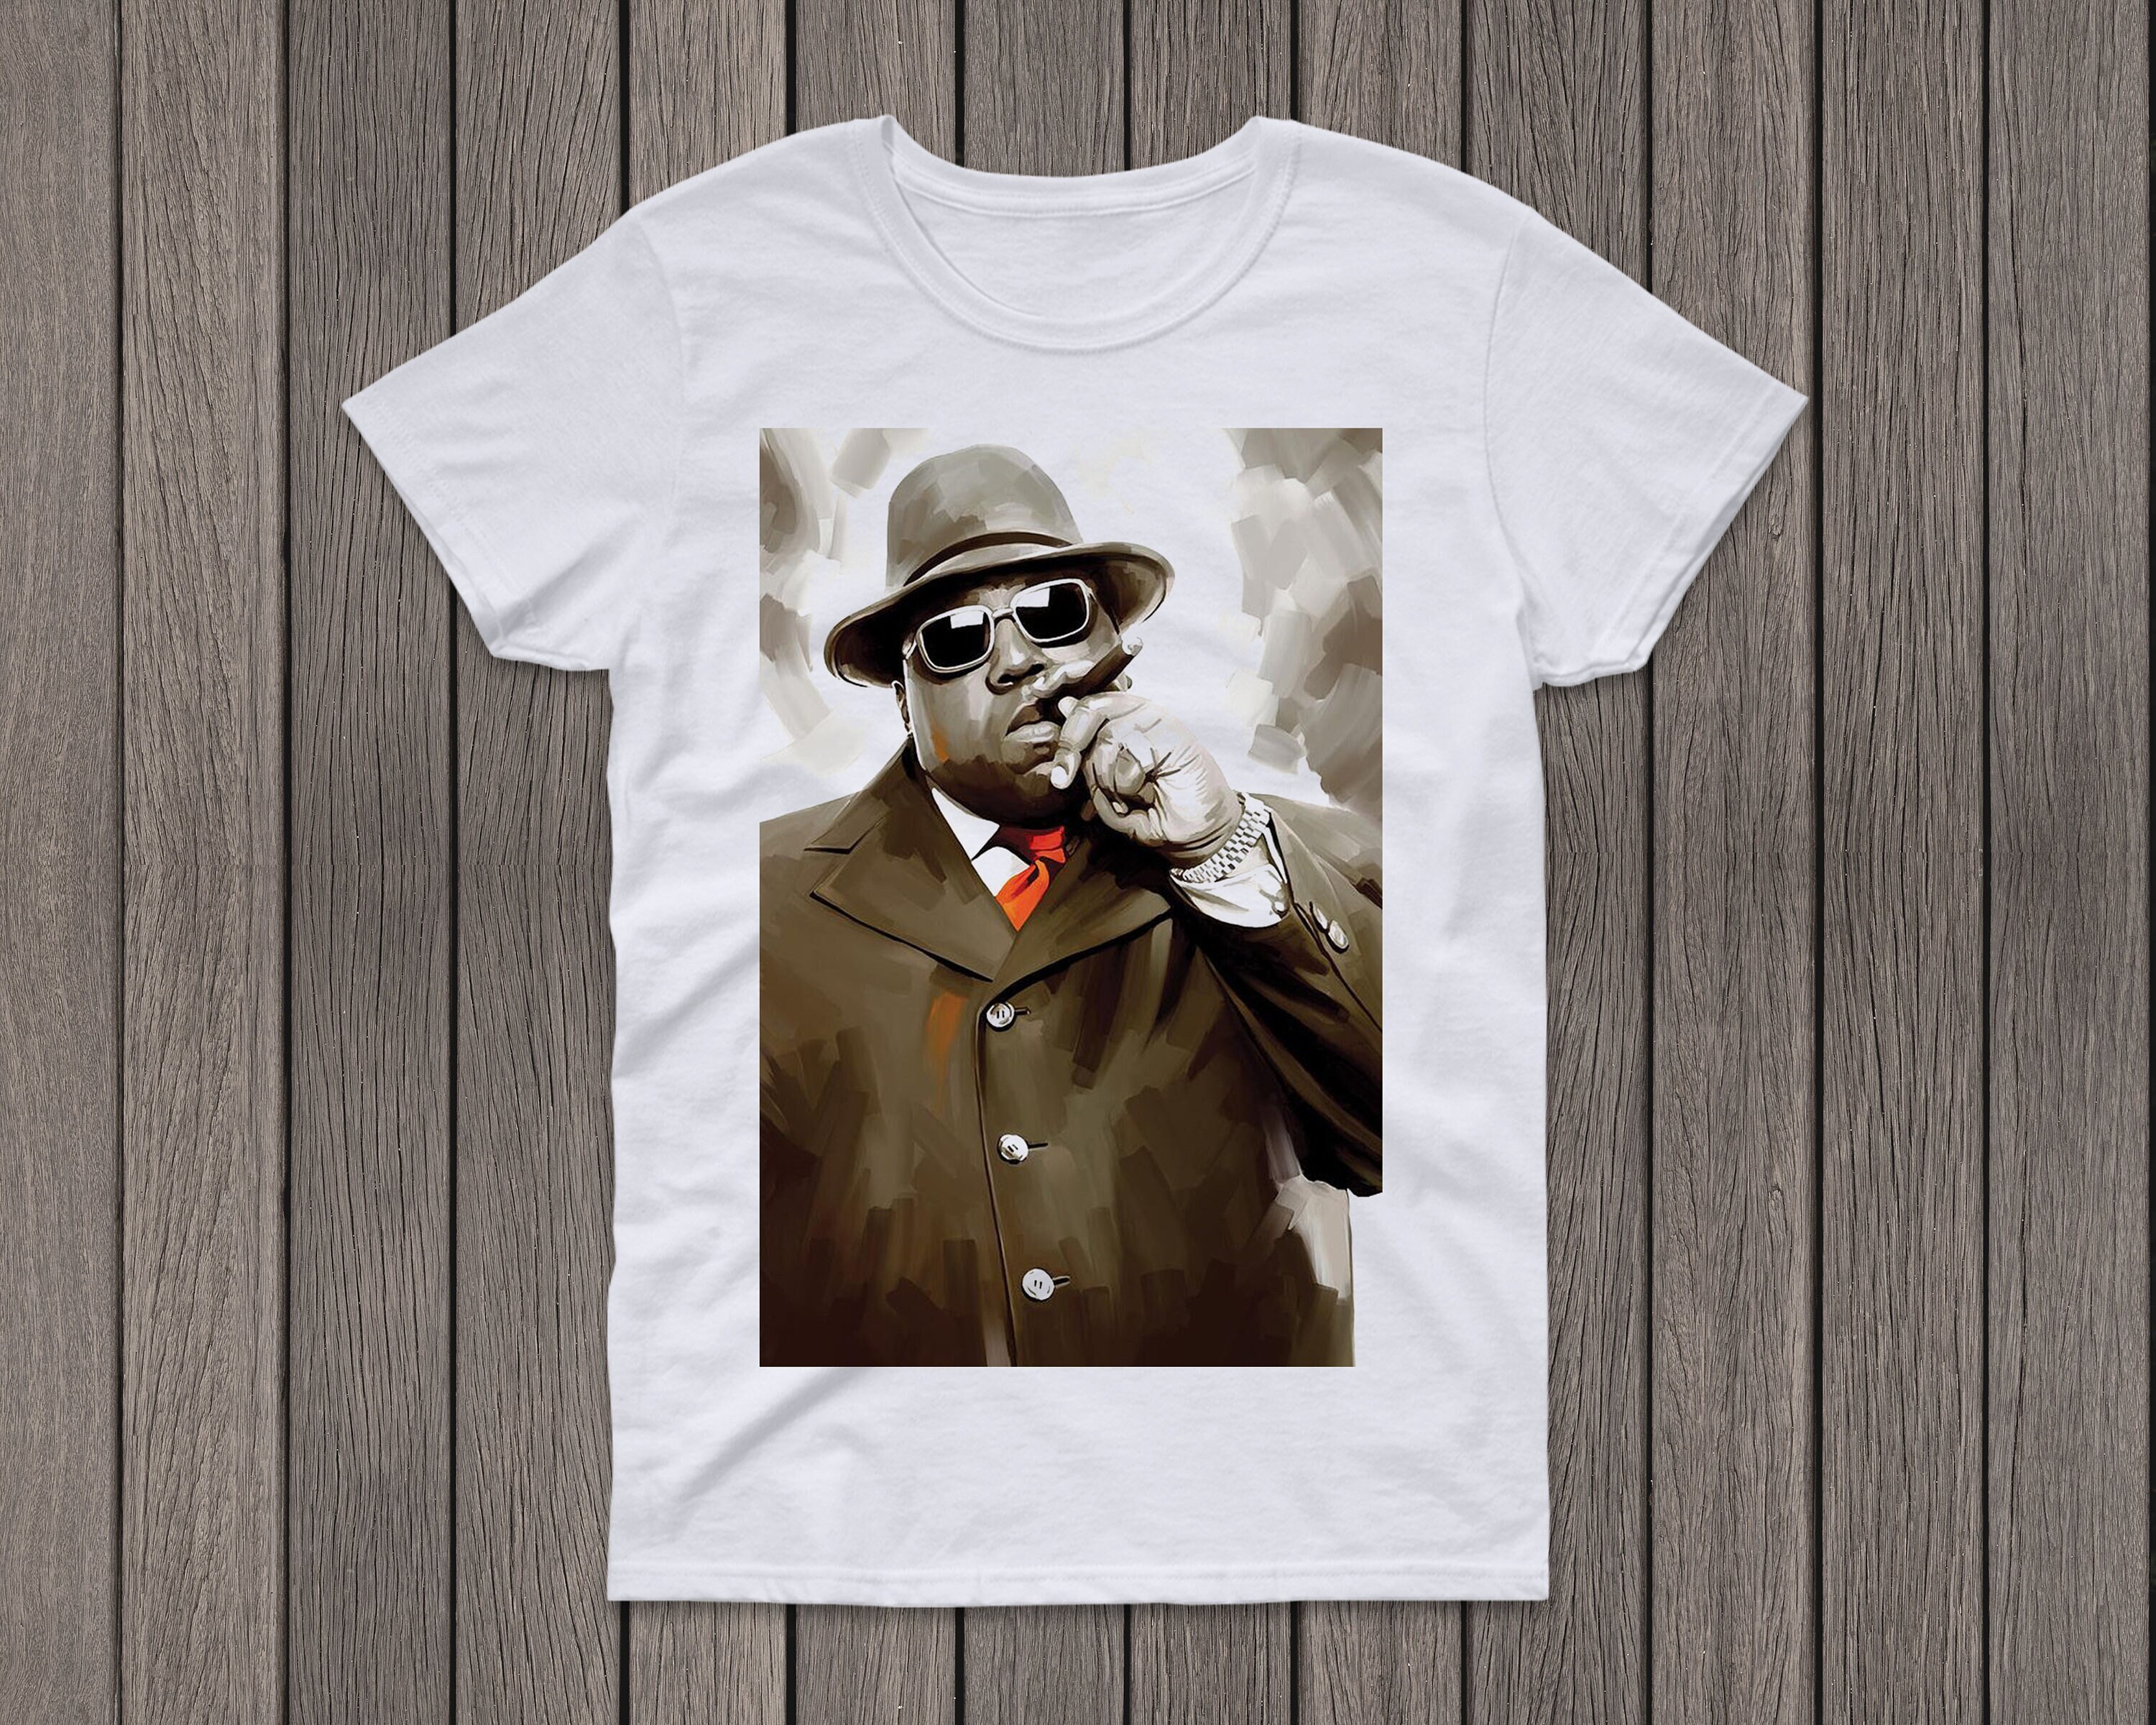 Discover Biggie Smalls T-Shirt, Notorious B.I.G Rapper, Biggie, Hip Hop